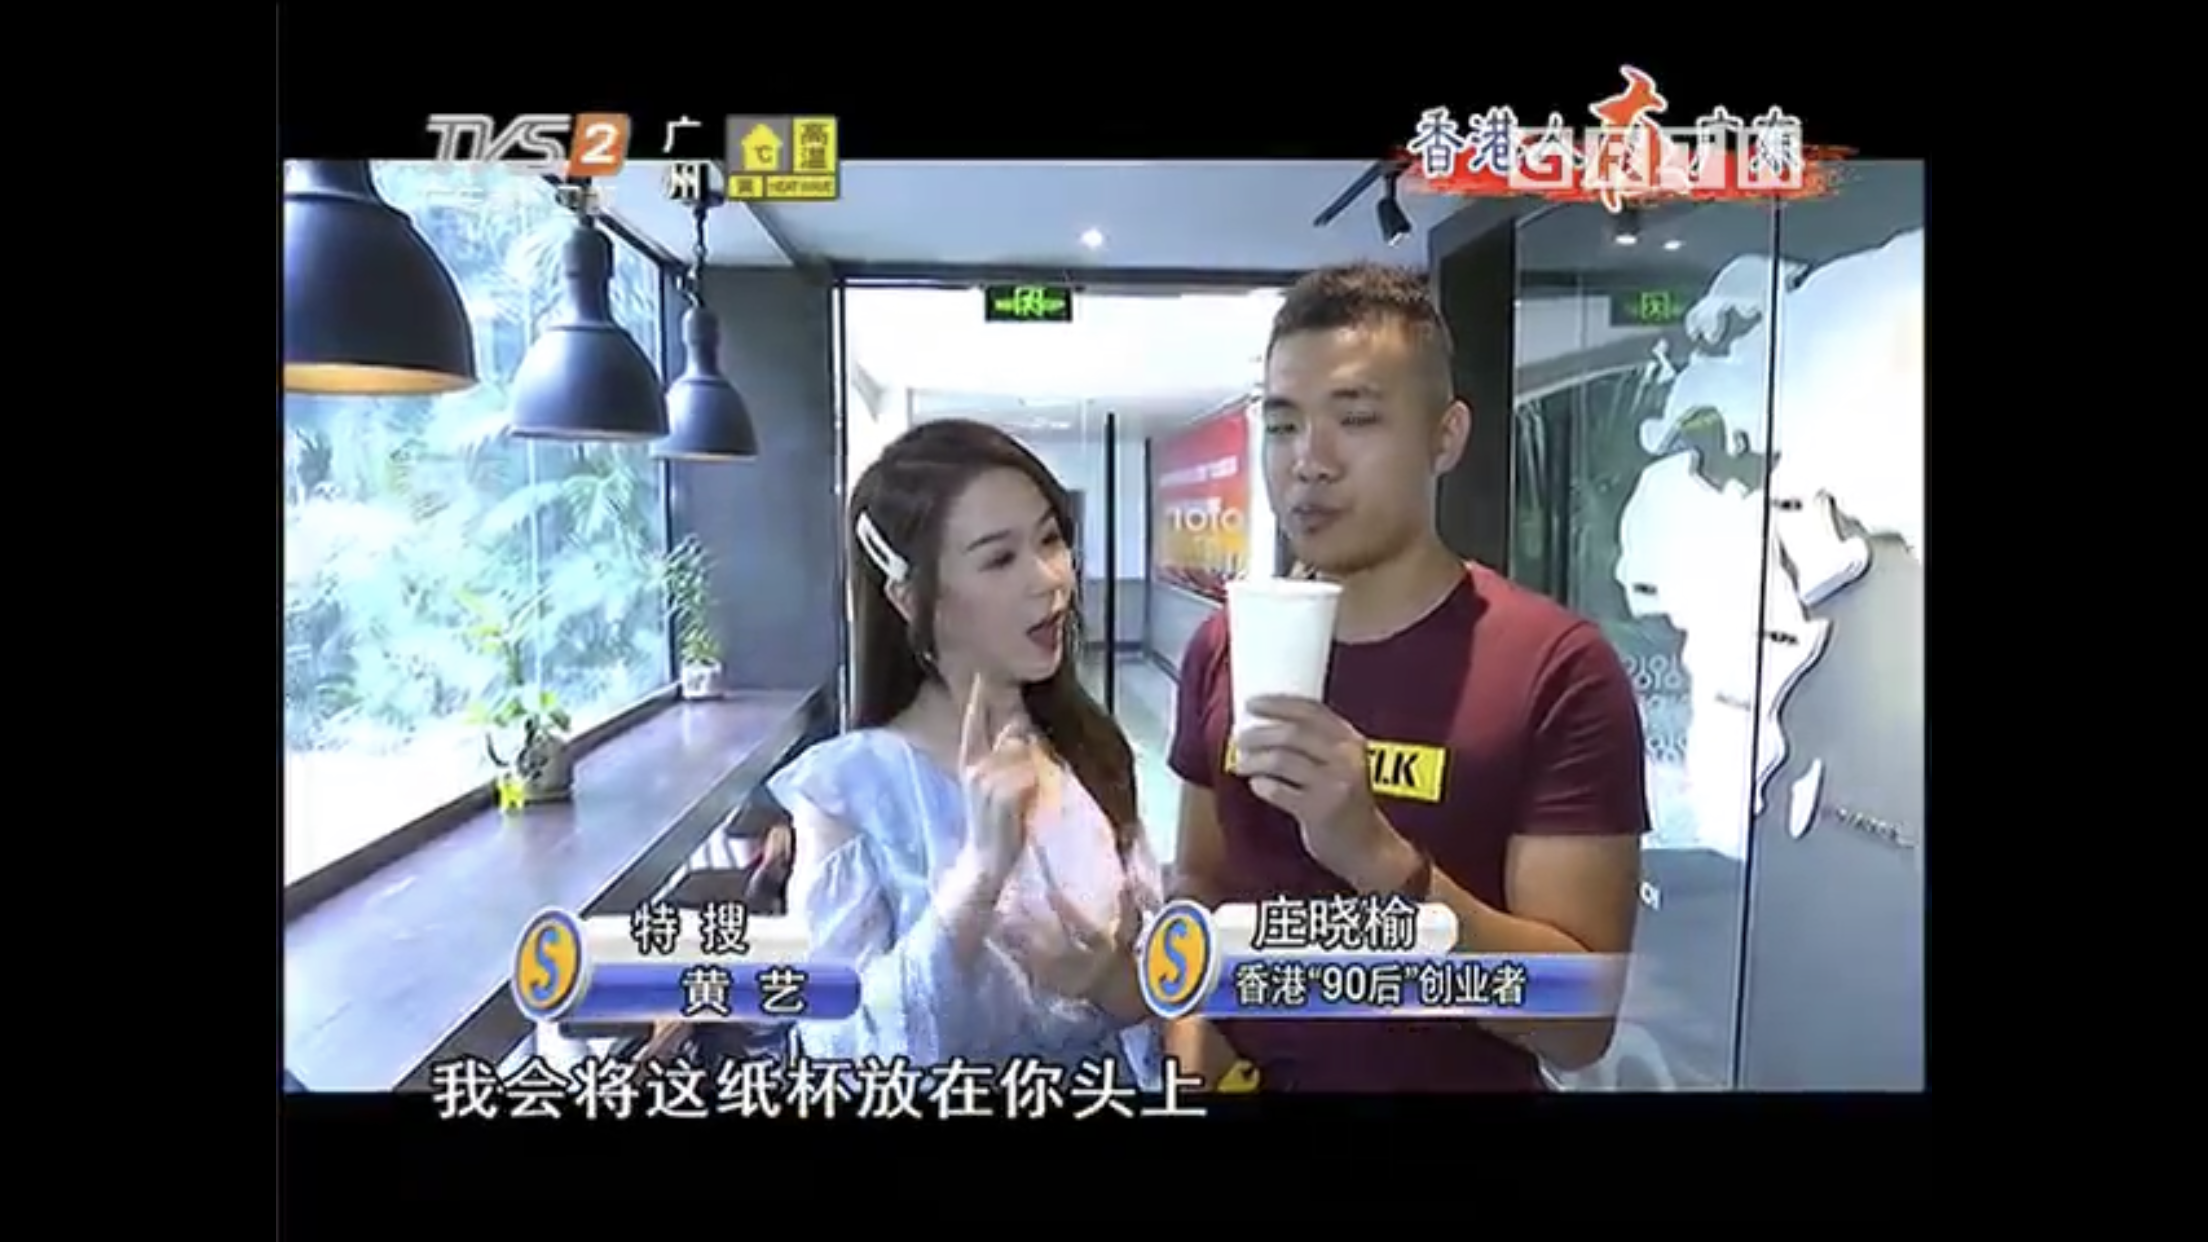 演藝人莊曉榆之媒體報導: 《廣東電視台》雙節棍採訪嘉賓